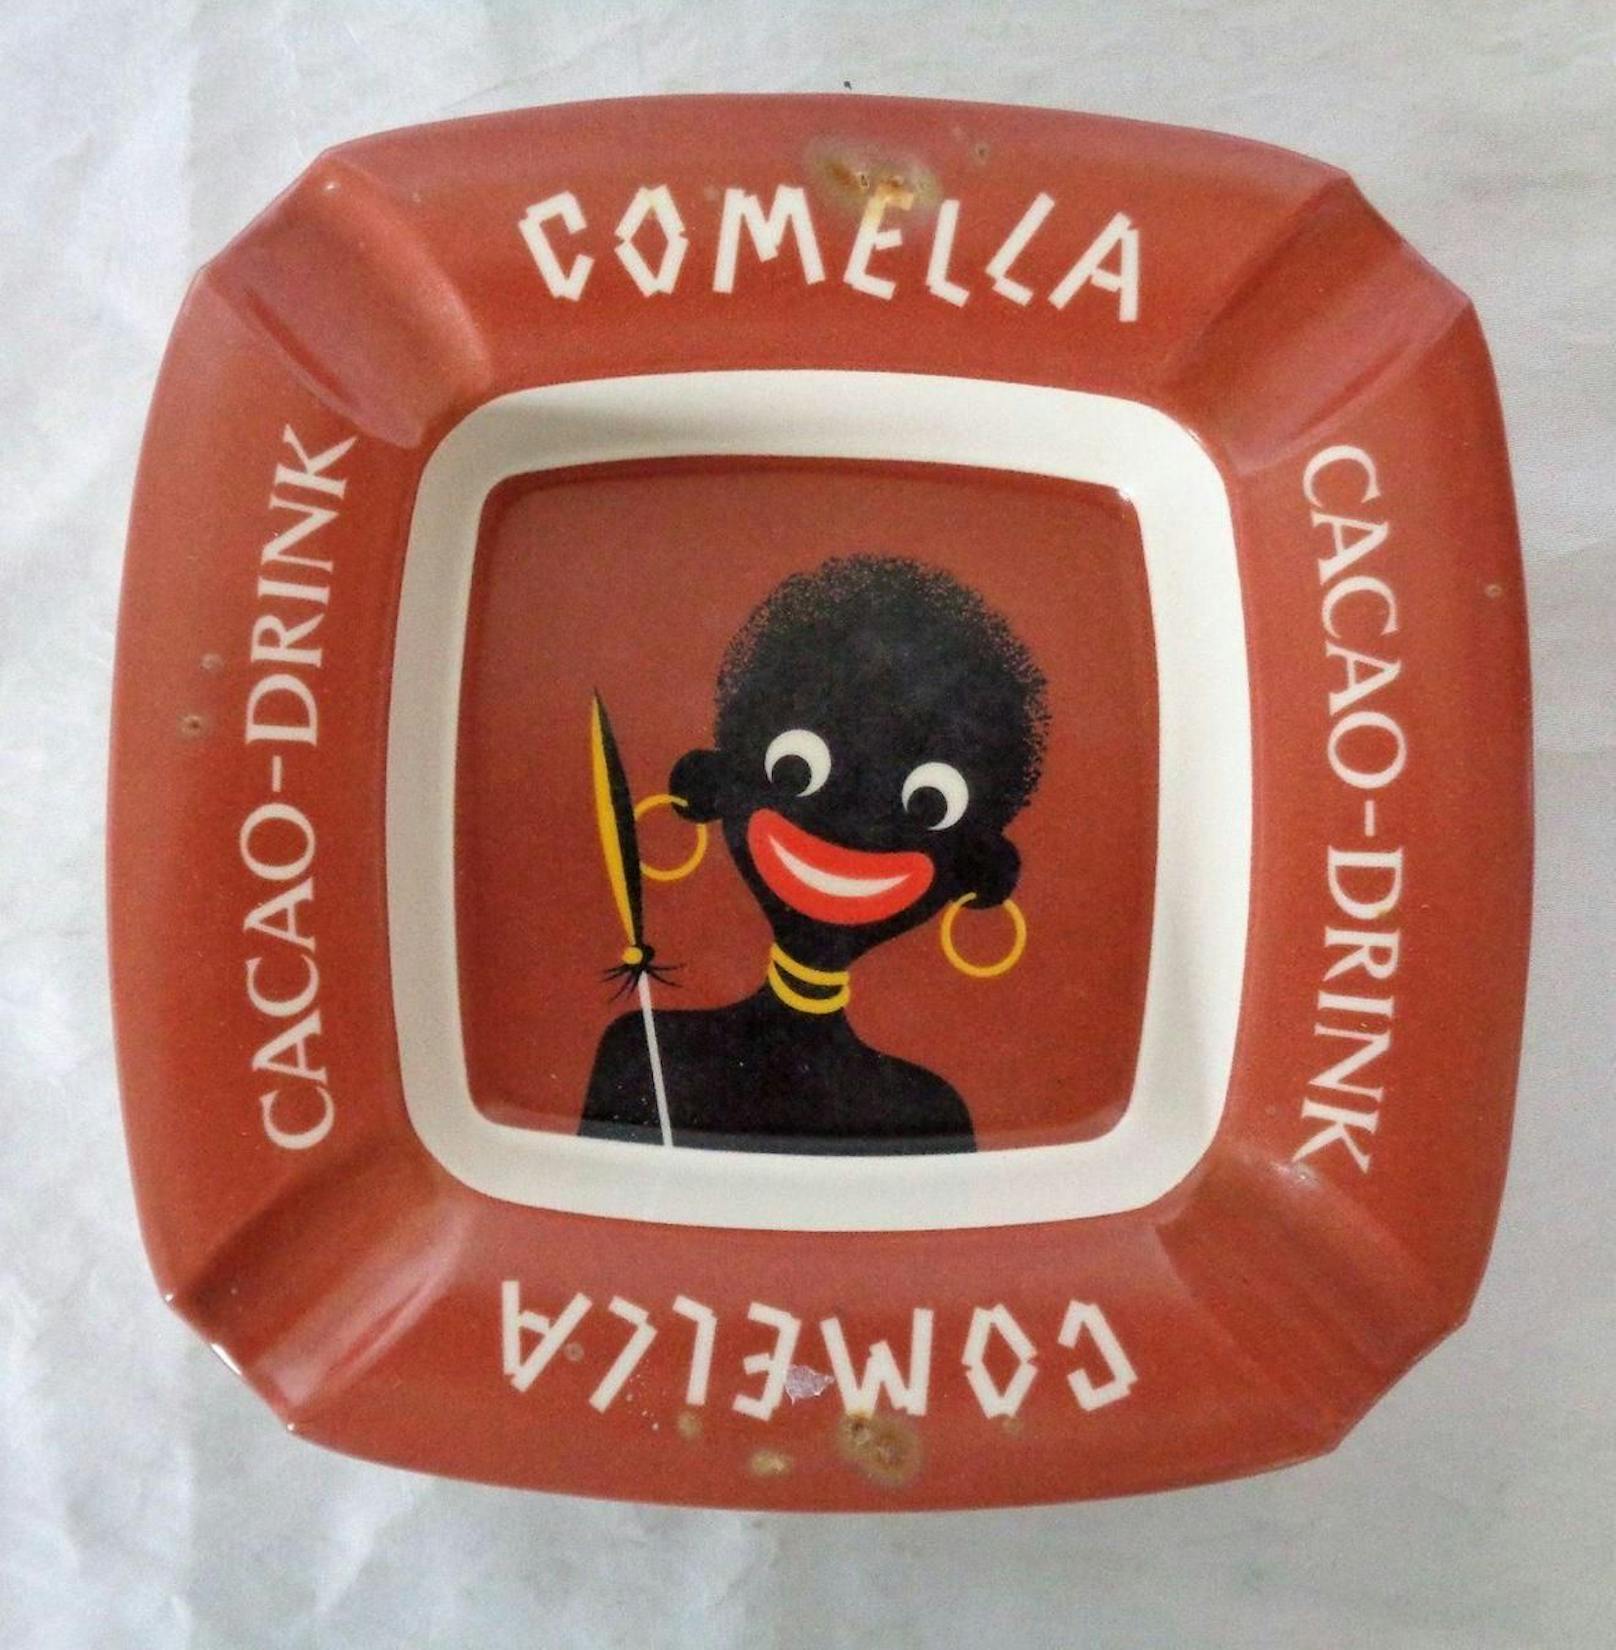 Auf Ricardo wollte ein Nutzer einen Comella-Aschenbecher mit einem alten Logo des Schokodrinks für 24 Franken verkaufen.